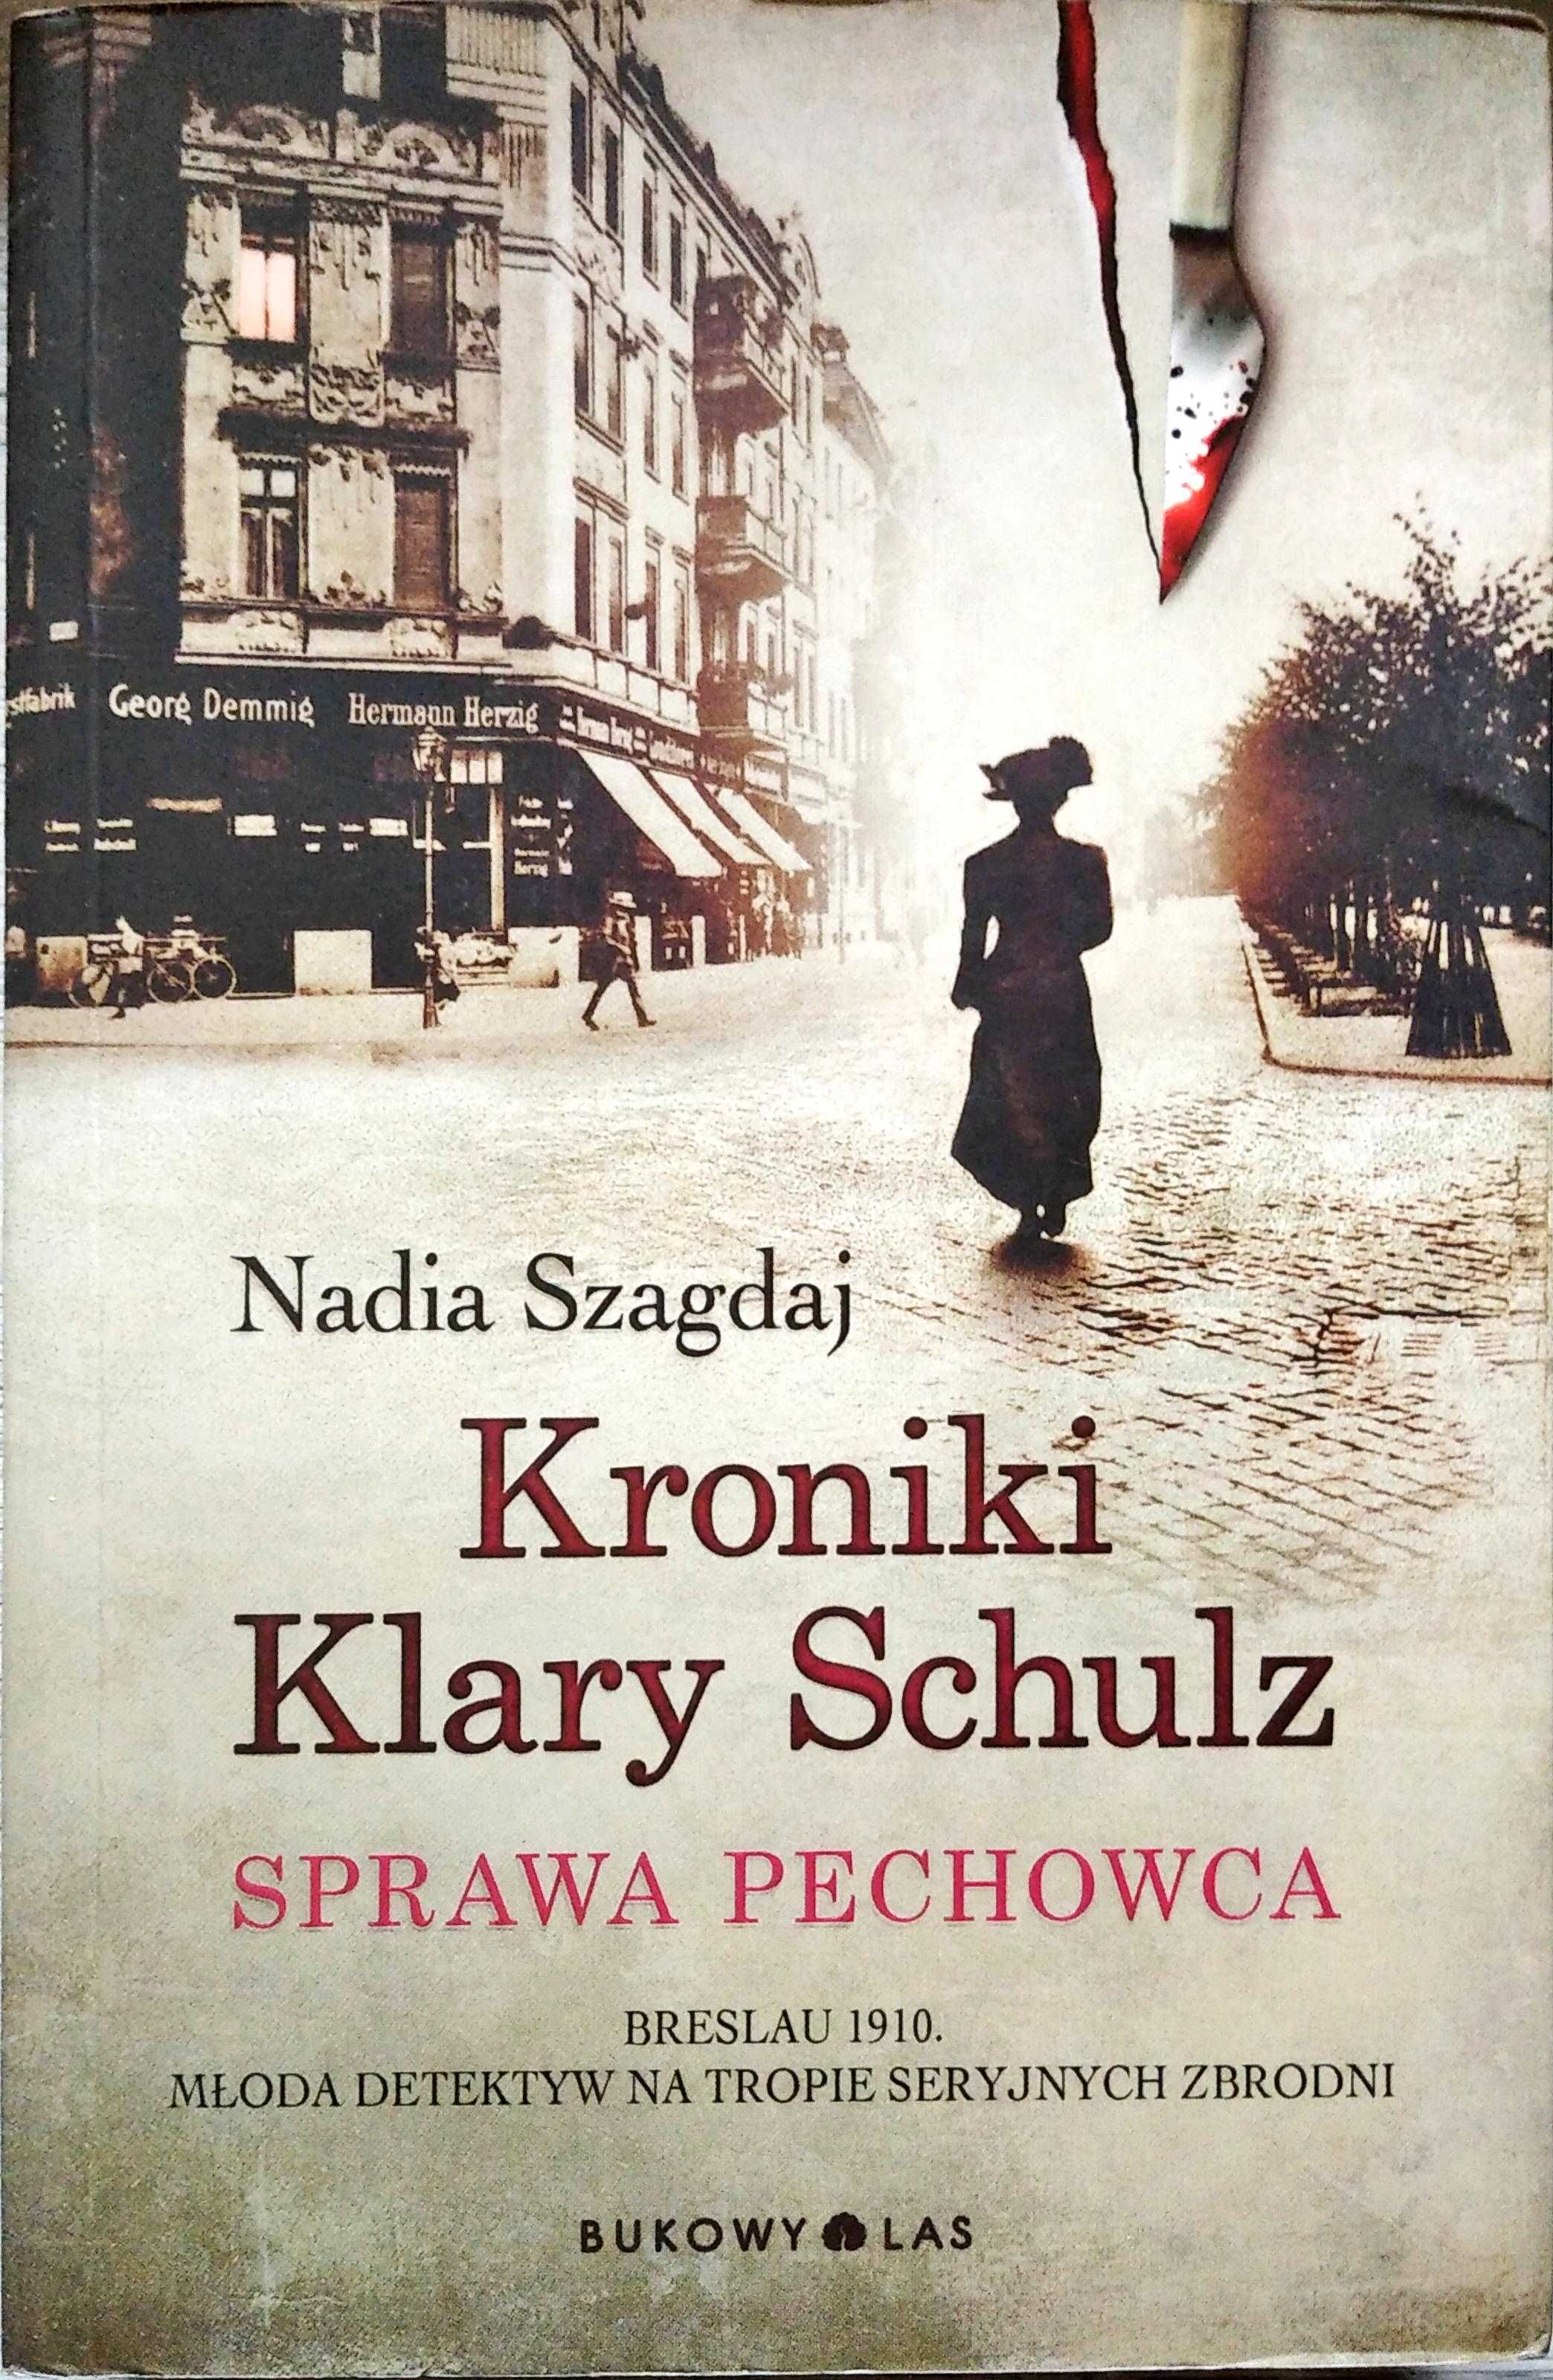 Nadia Szagdaj "Kroniki Klary Schulz" cz1 -  "Sprawa Pechowca"